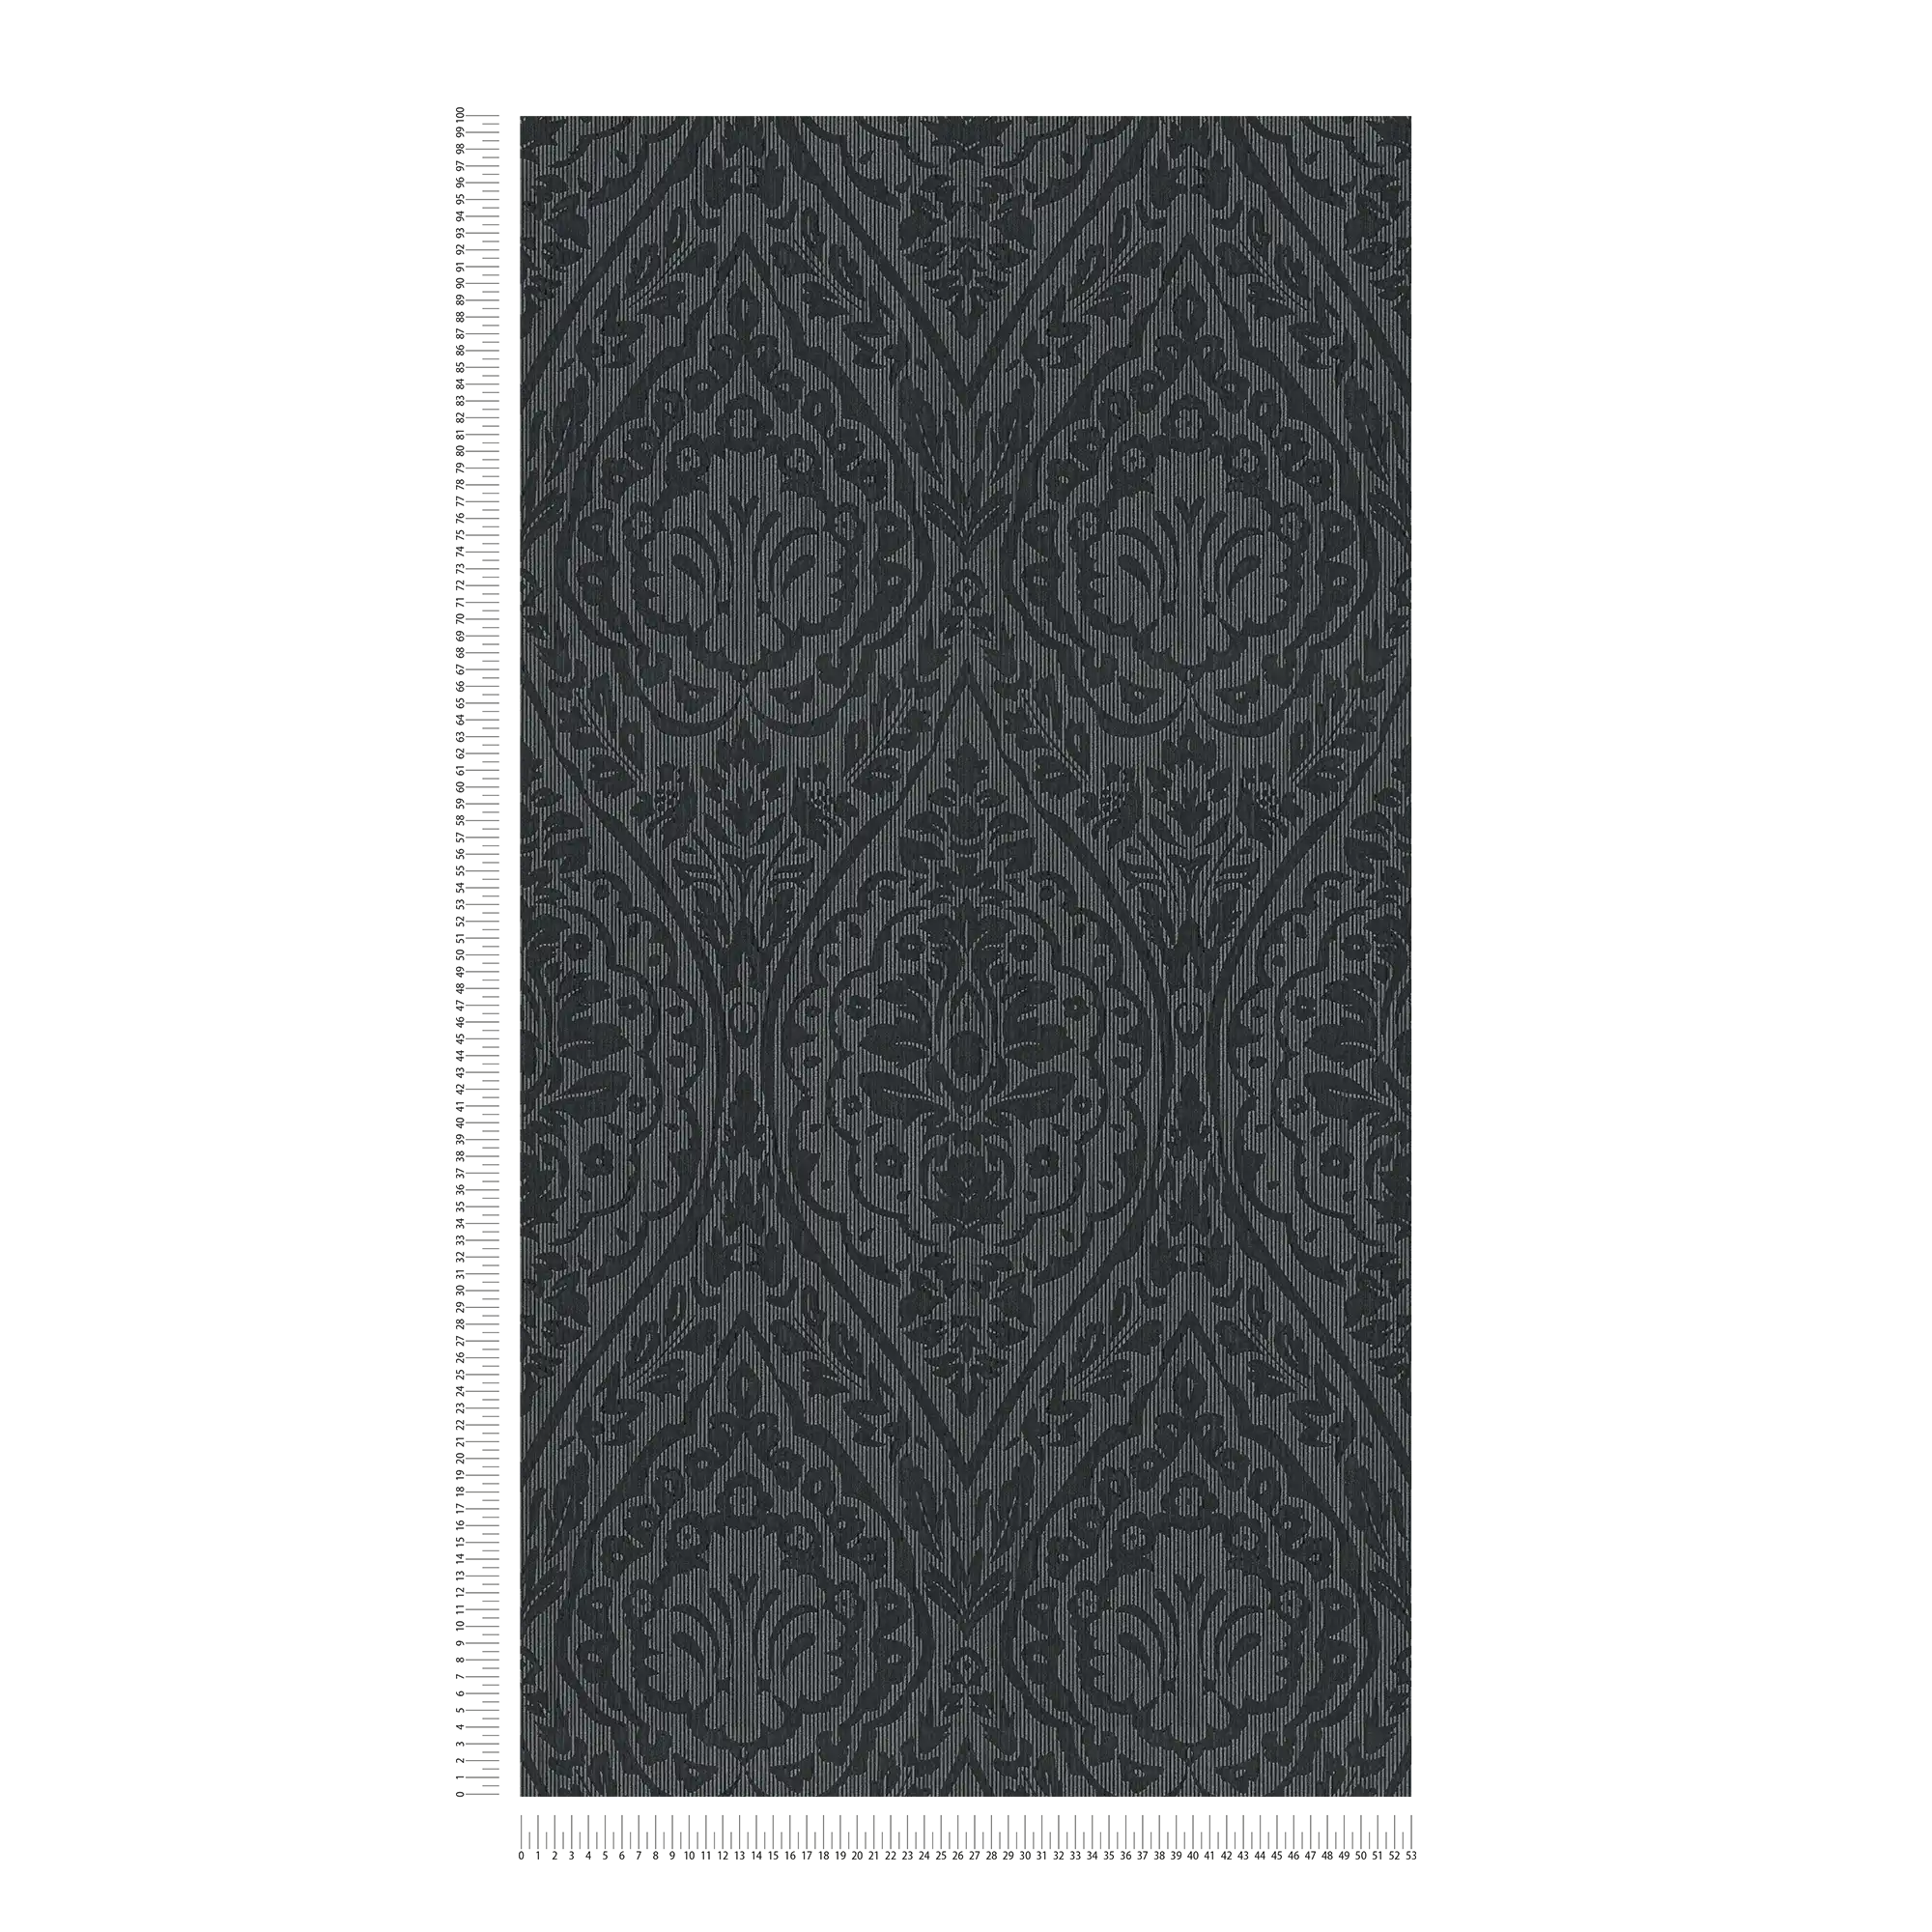             Papier peint floral ornemental de style colonial - gris, noir
        